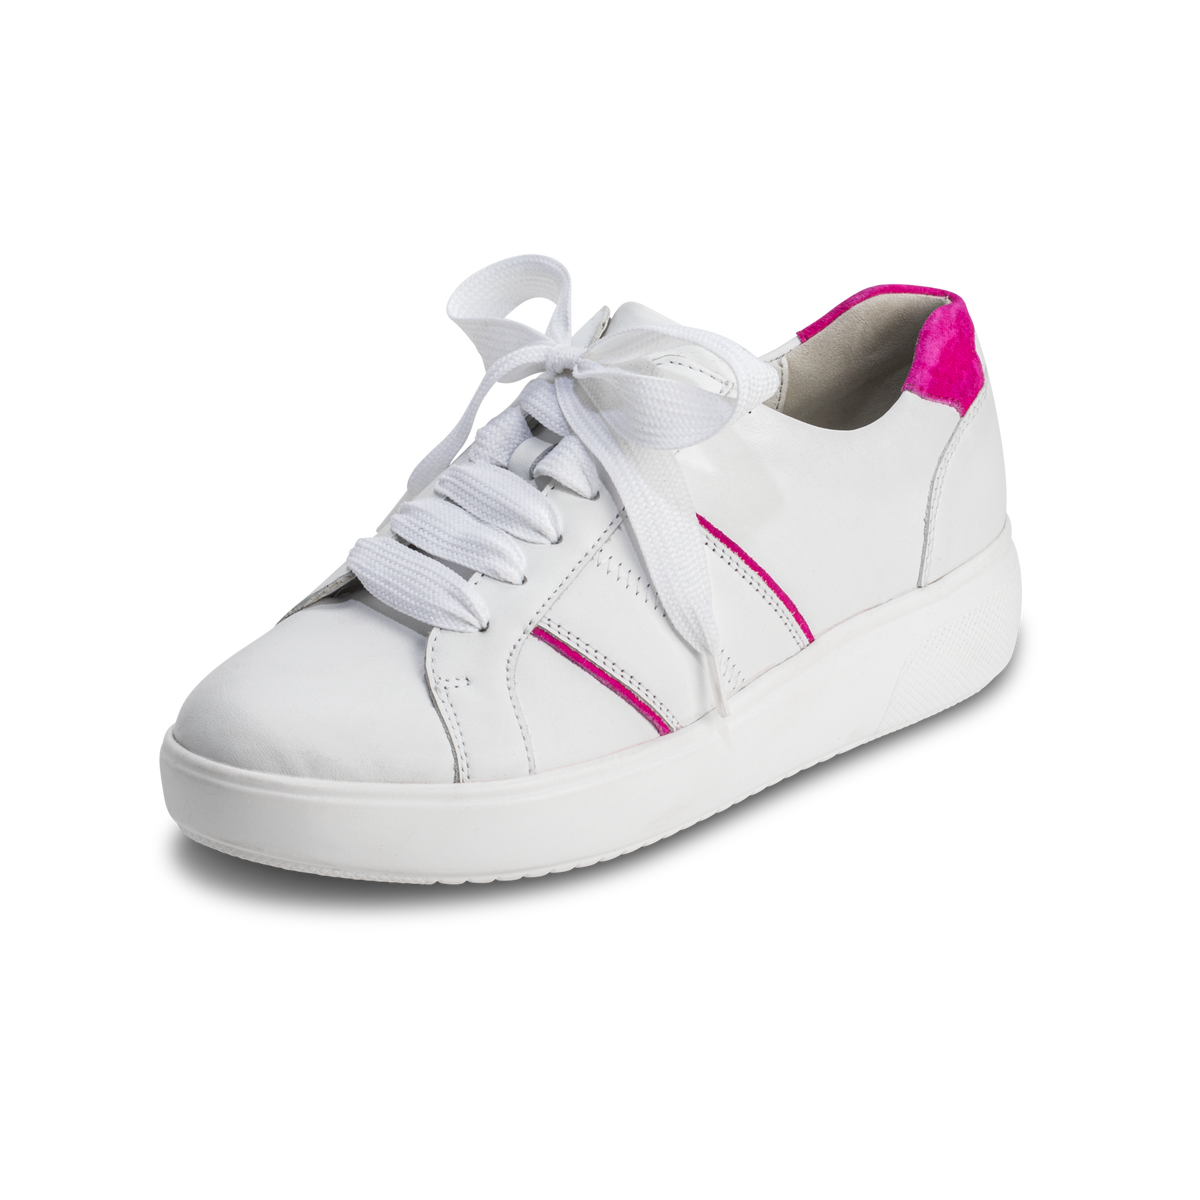 eindrucksvoller Sneaker Nappaleder weiß/pink